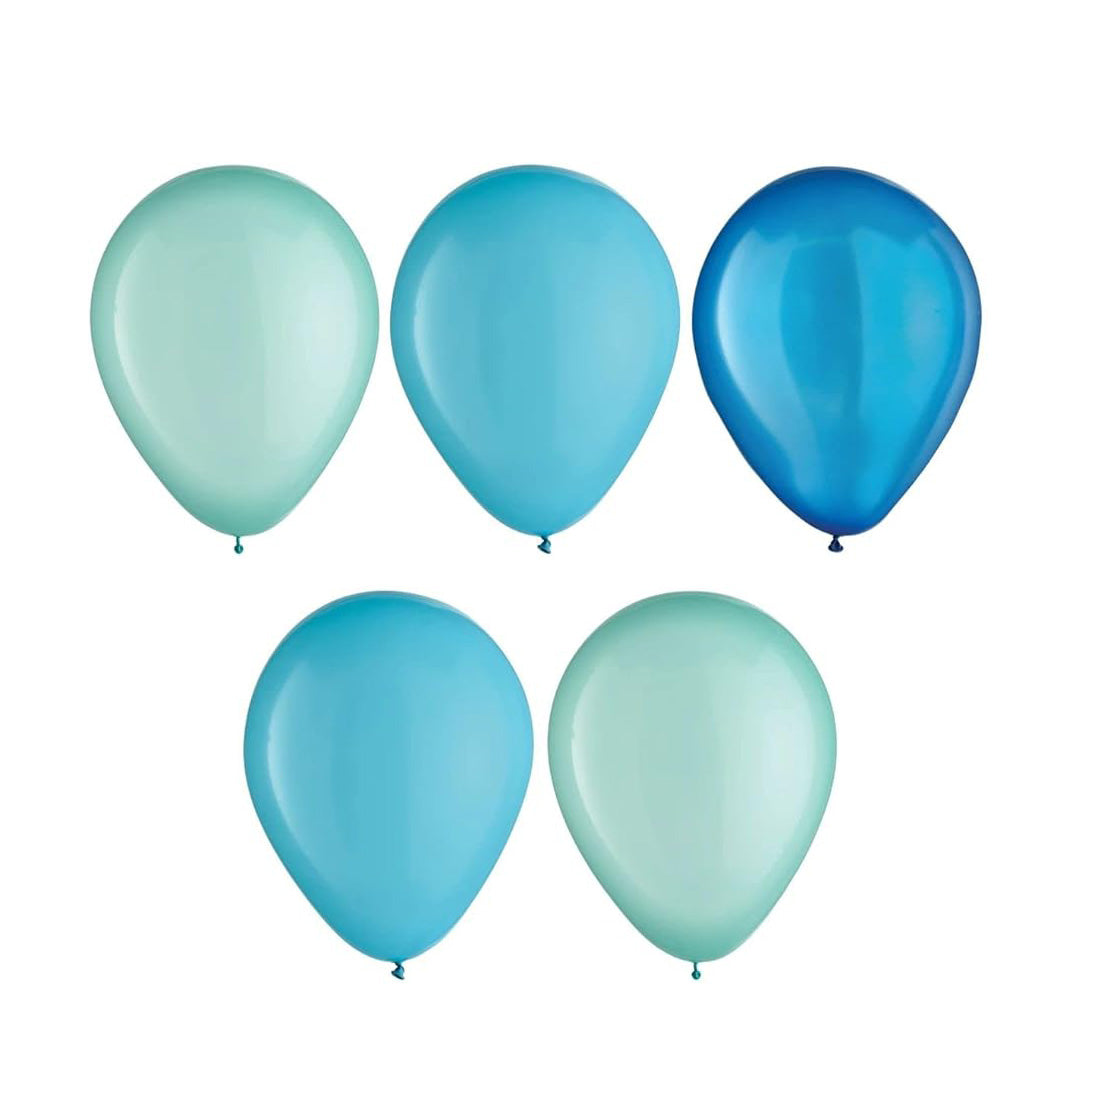 Aqua Blue Latex Balloons Assortments 11in 15pcs